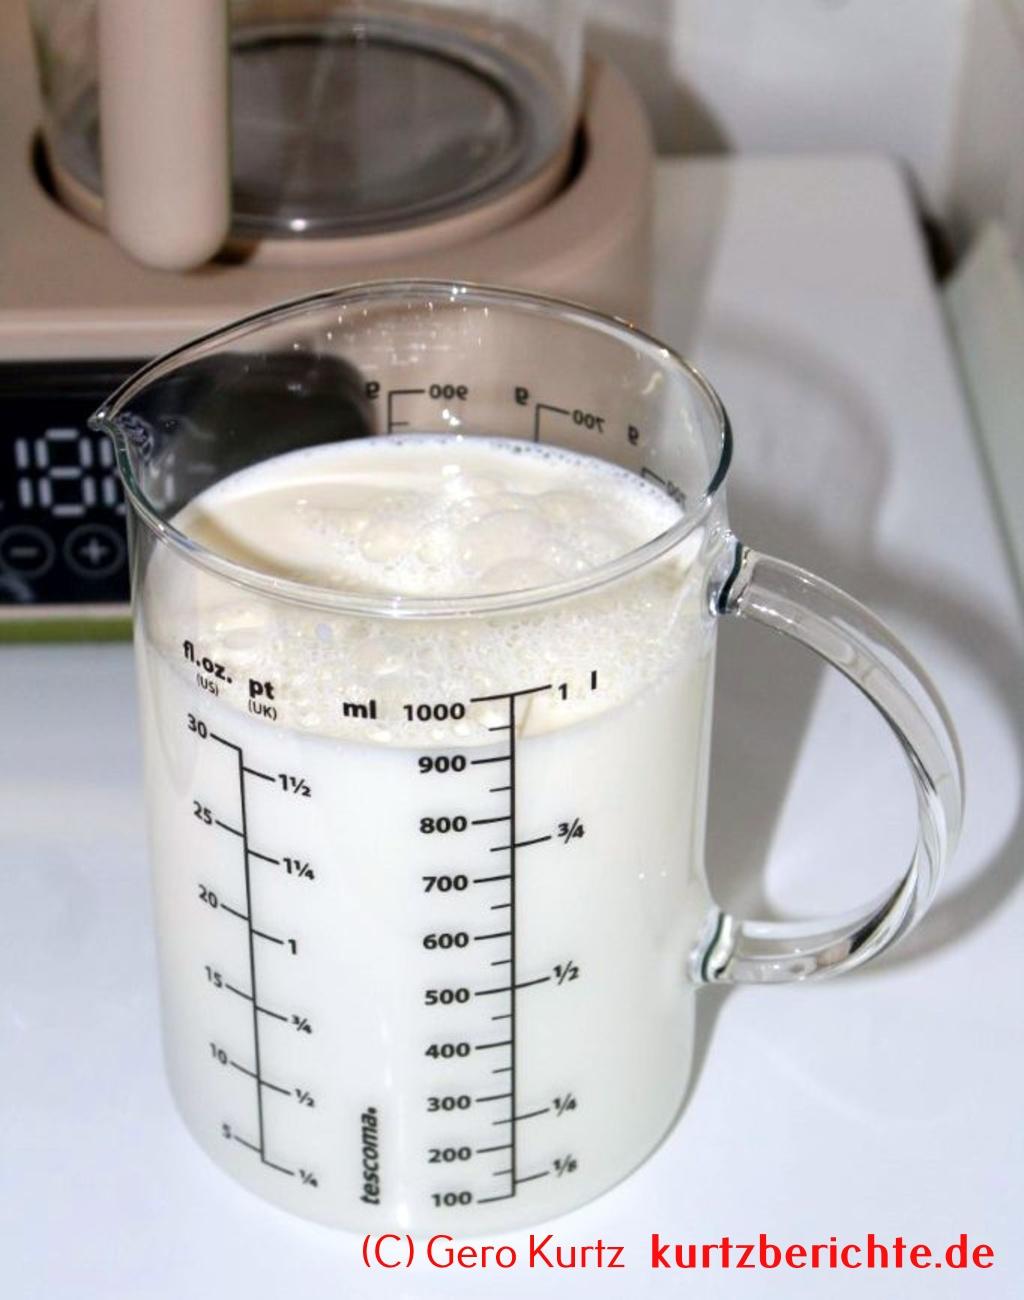 FeeKaa Babyflaschen Sterilisator - Gefäß mit Milch